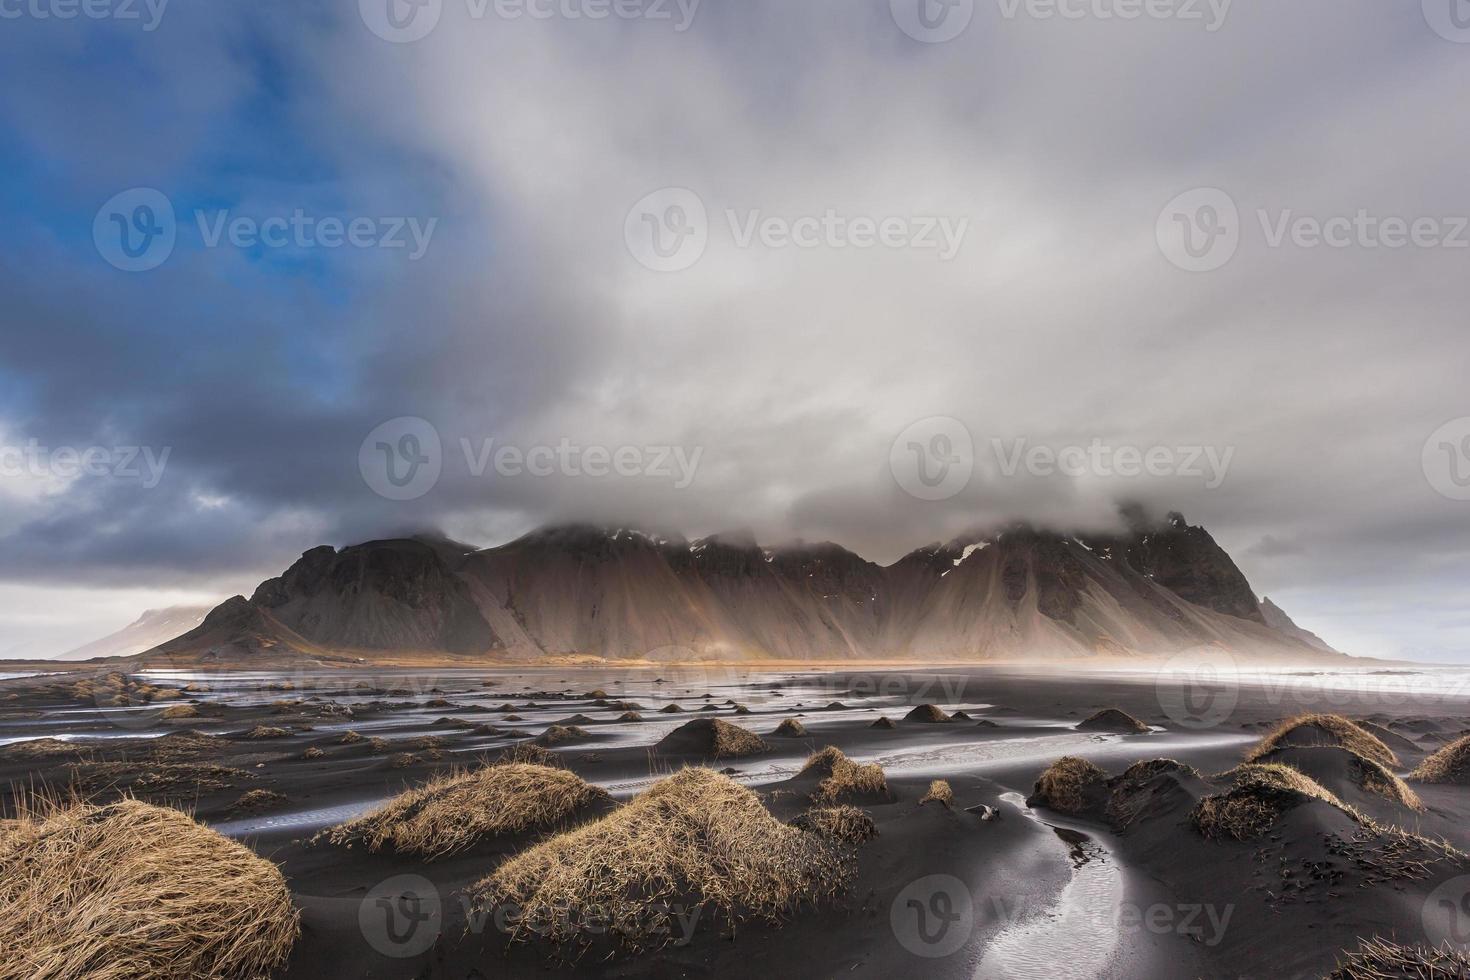 montanha vesturhorn e dunas de areia preta, islândia foto